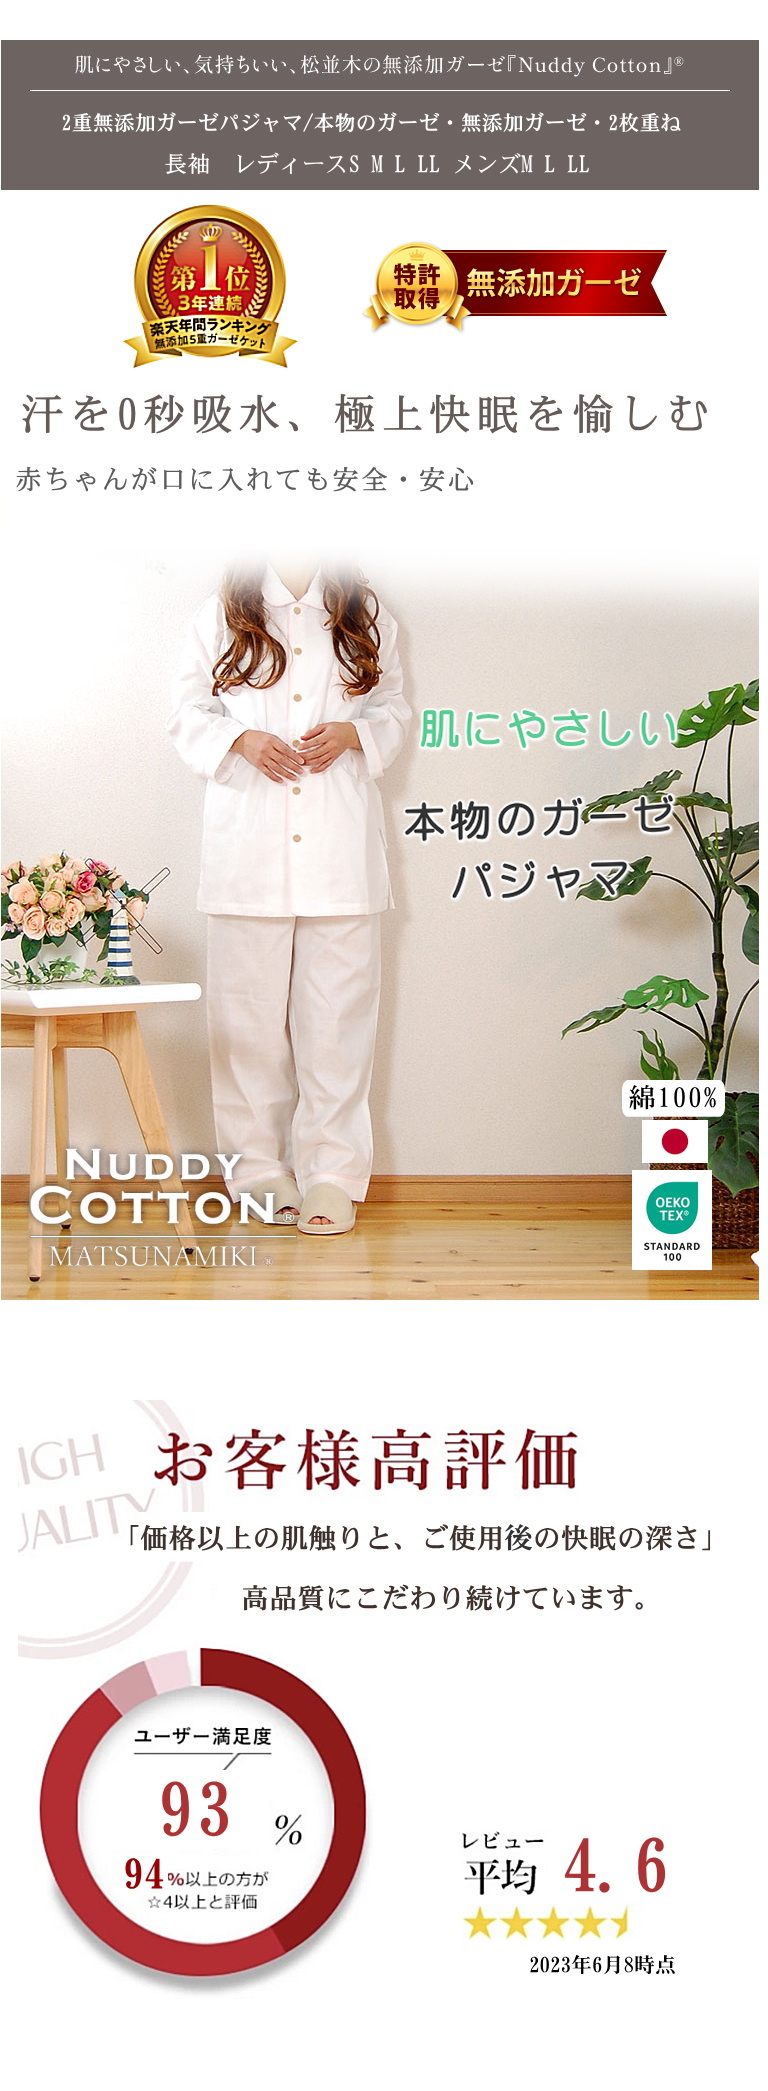 【特許】無添加ガーゼ/無添加ガーゼ 肌に優しい 松並木 ガーゼパジャマ レディース メンズ  日本製